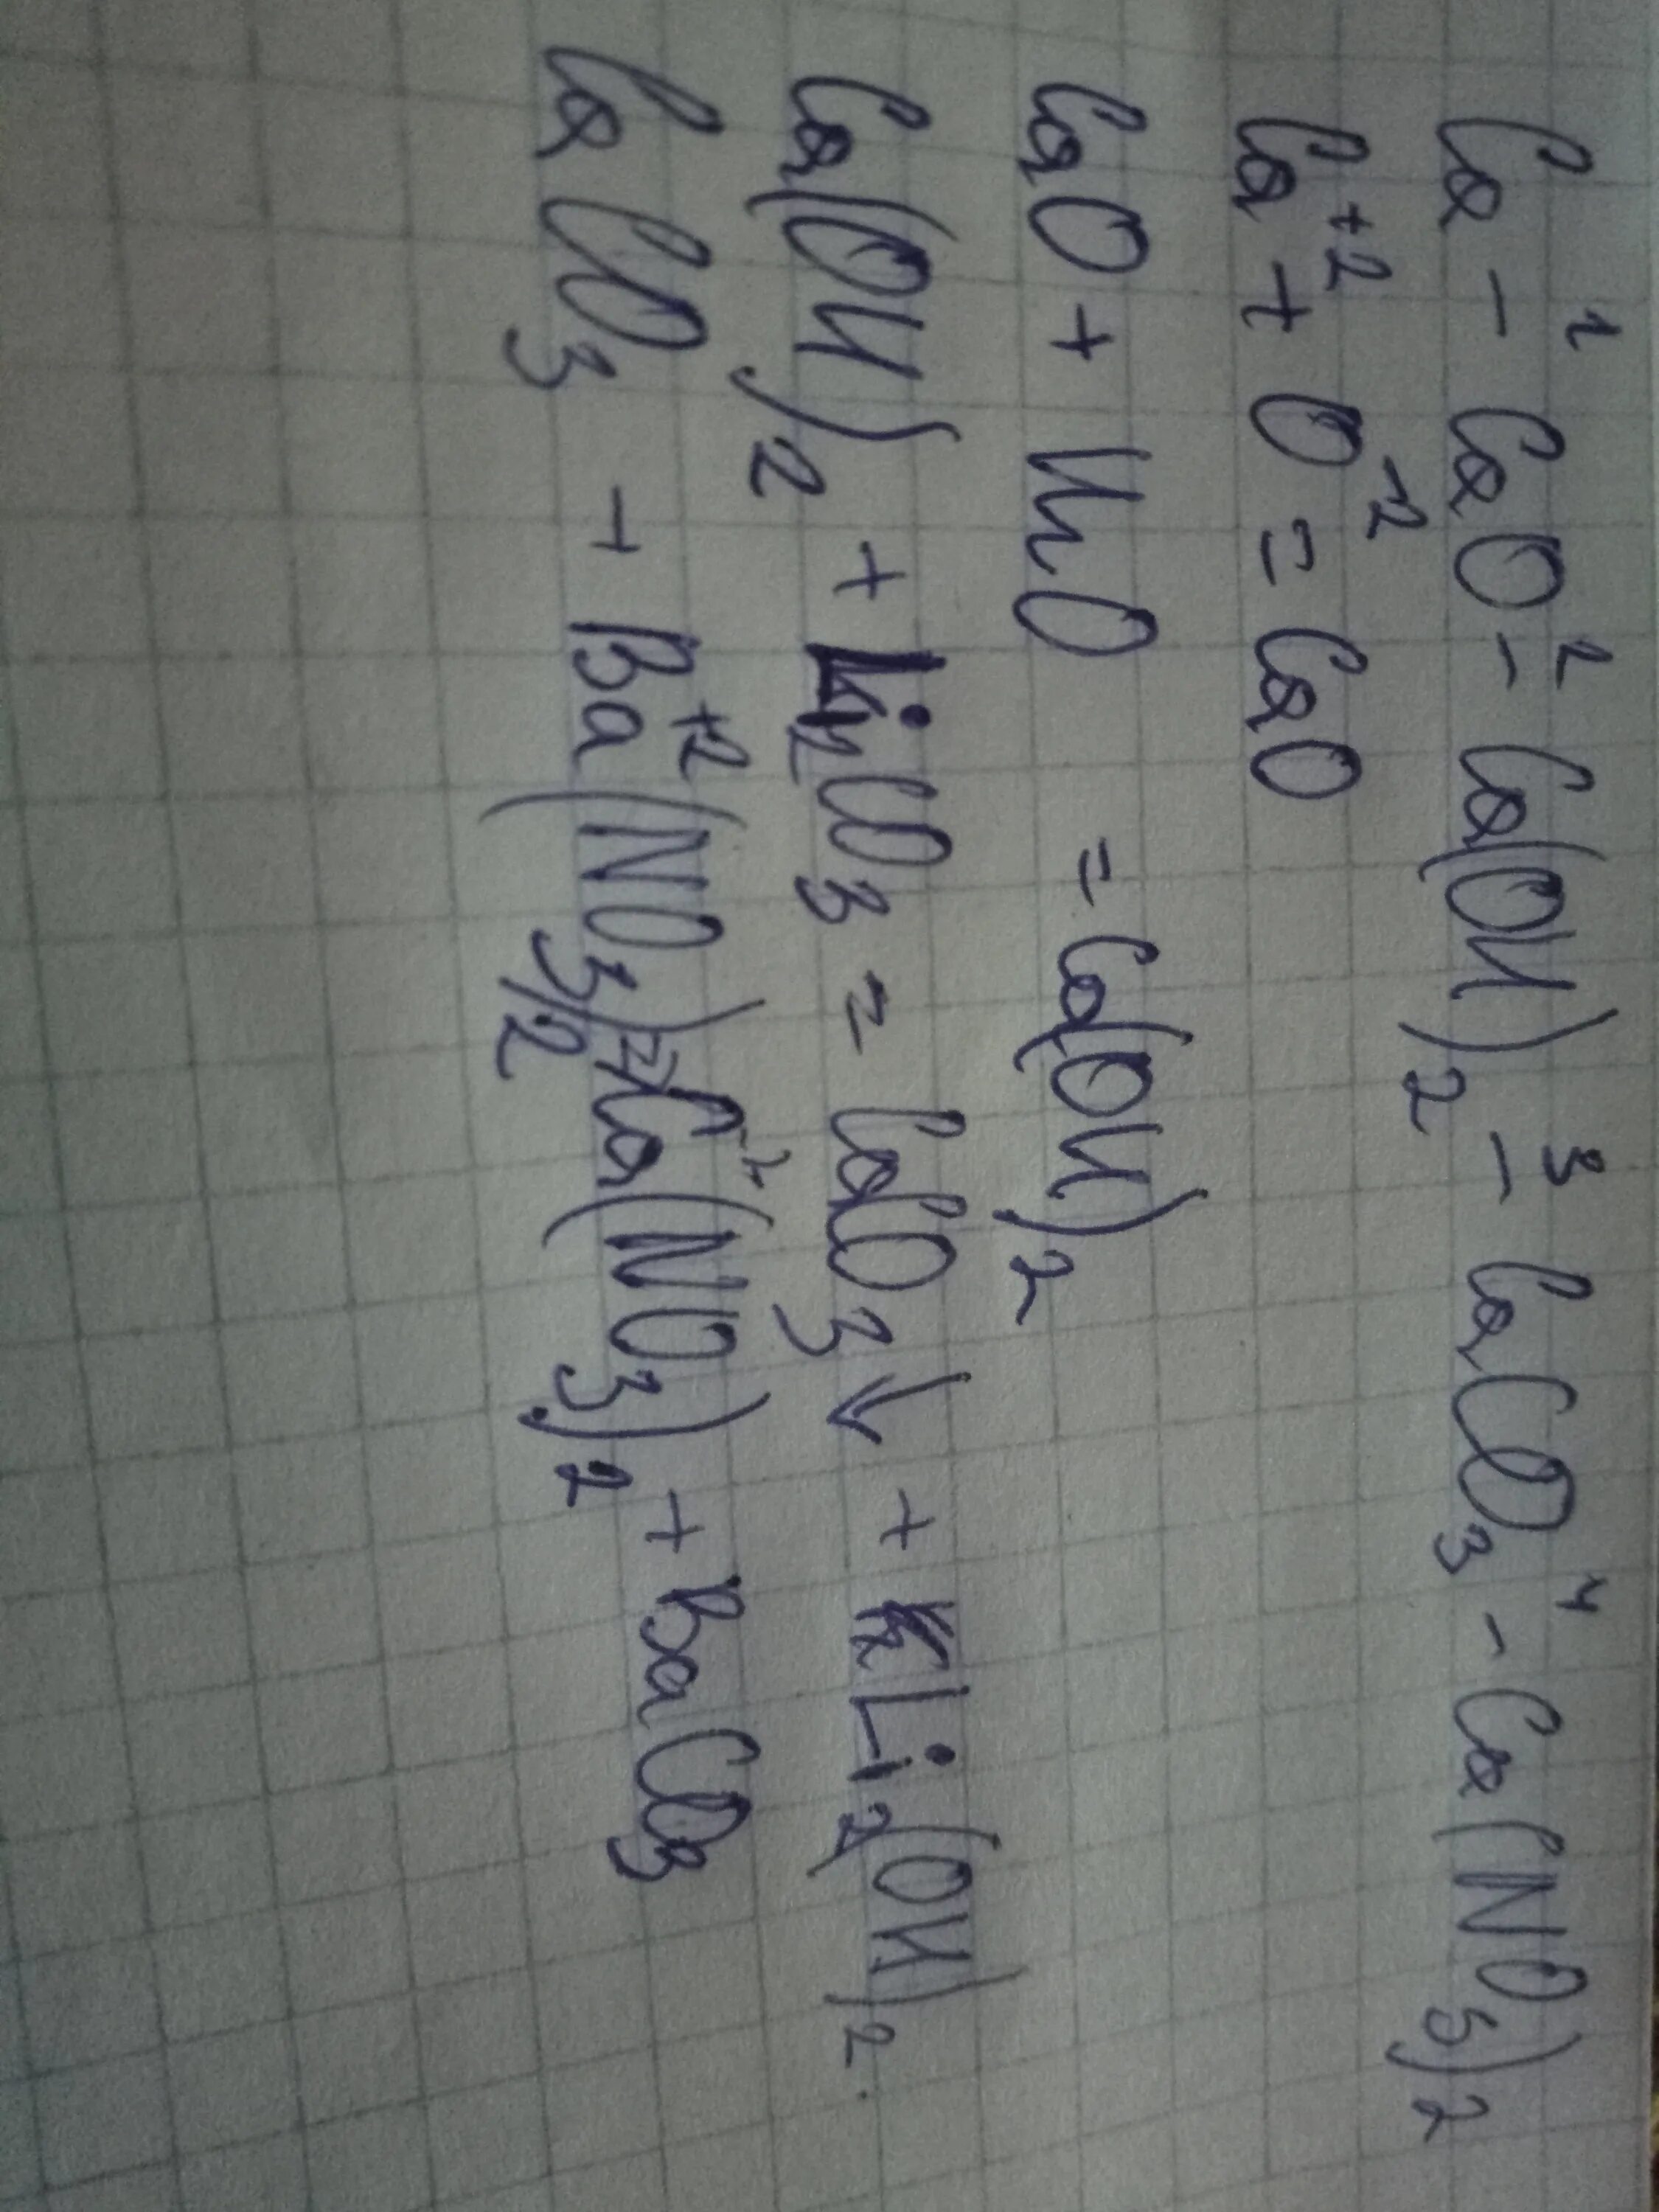 Ca cac2 ca oh 2 caco3. Уравнение реакции CA=cao=CA(Oh)2. CA(Oh)2 cao уравнение реакции. Уравнение реакции cao CA Oh 2 - caso3. CA cao CA Oh 2 caco3.